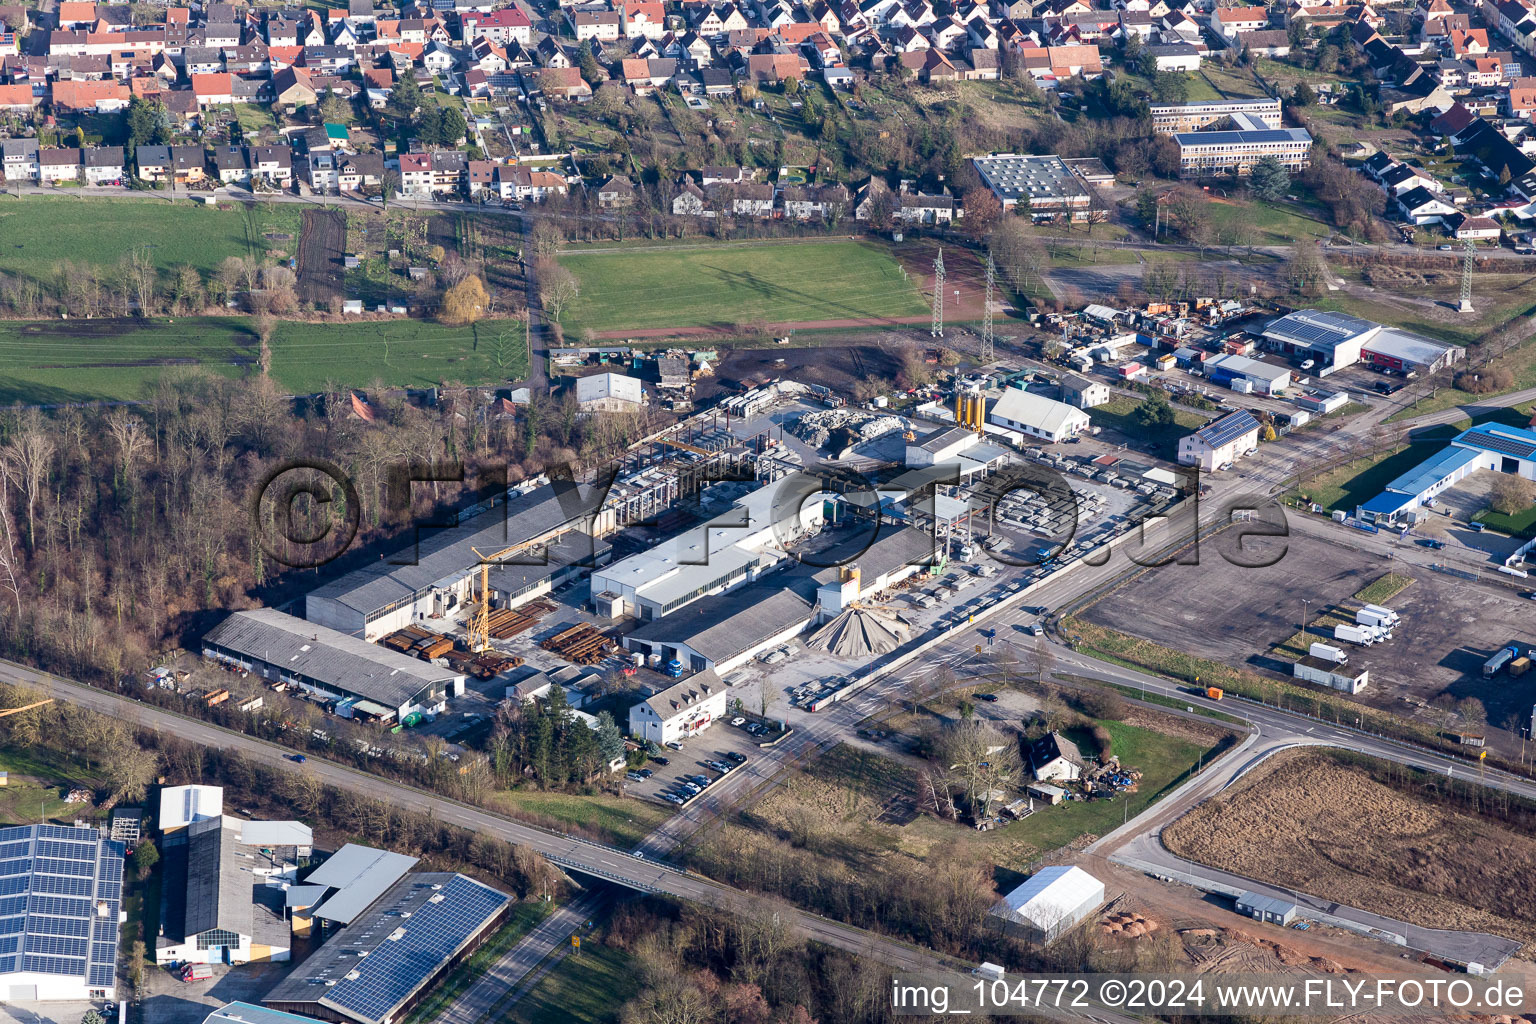 Vue aérienne de Zone industrielle, usine de béton préfabriqué Schneider à le quartier Huttenheim in Philippsburg dans le département Bade-Wurtemberg, Allemagne